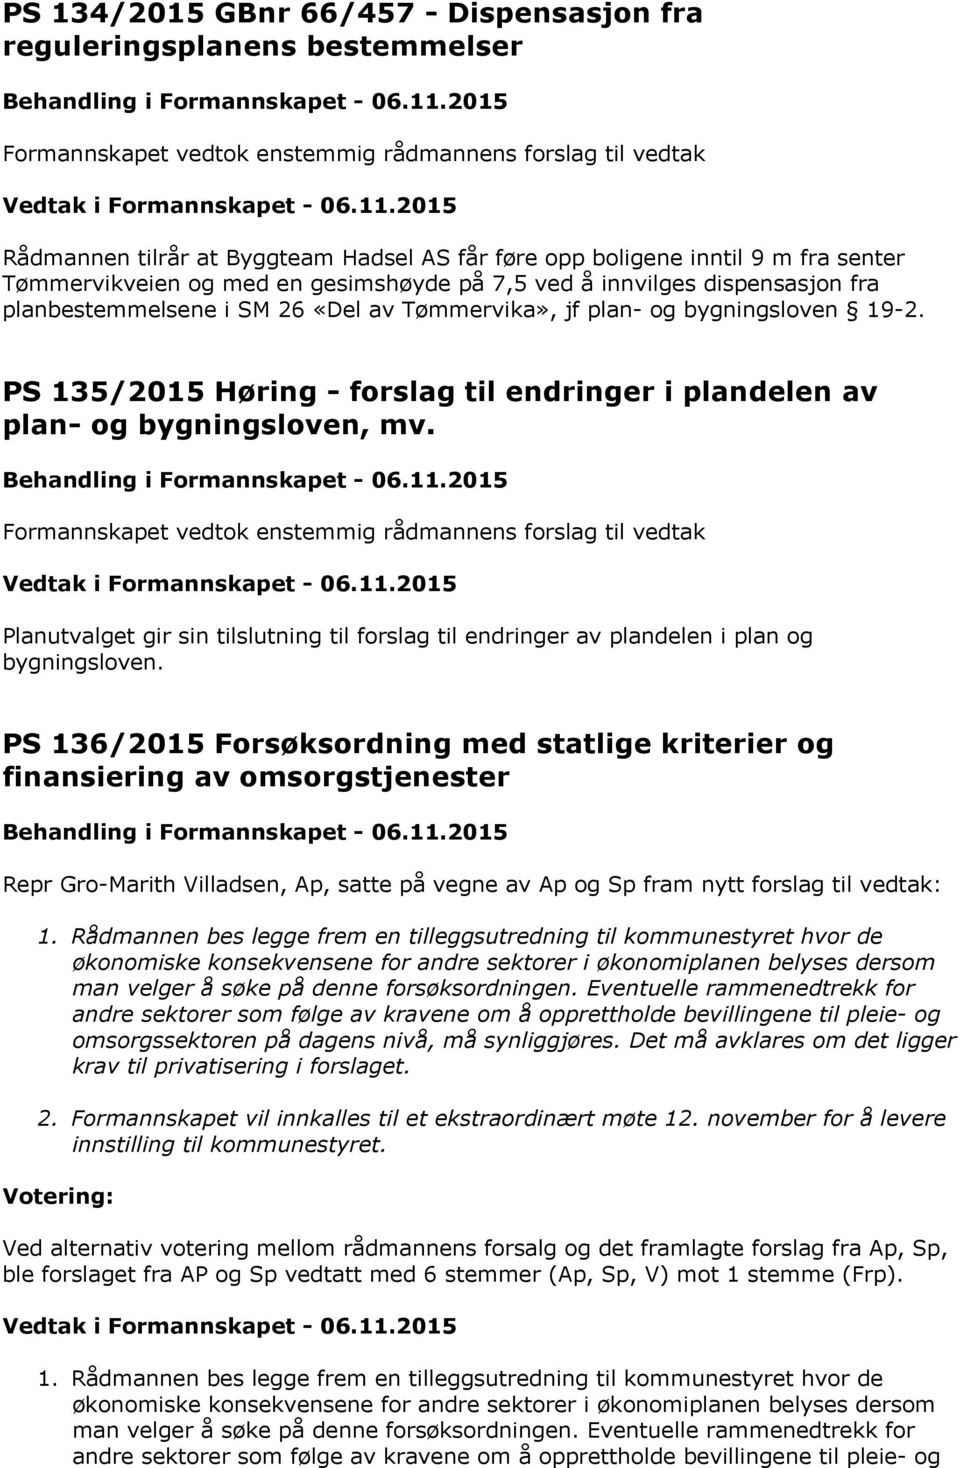 PS 135/2015 Høring - forslag til endringer i plandelen av plan- og bygningsloven, mv.